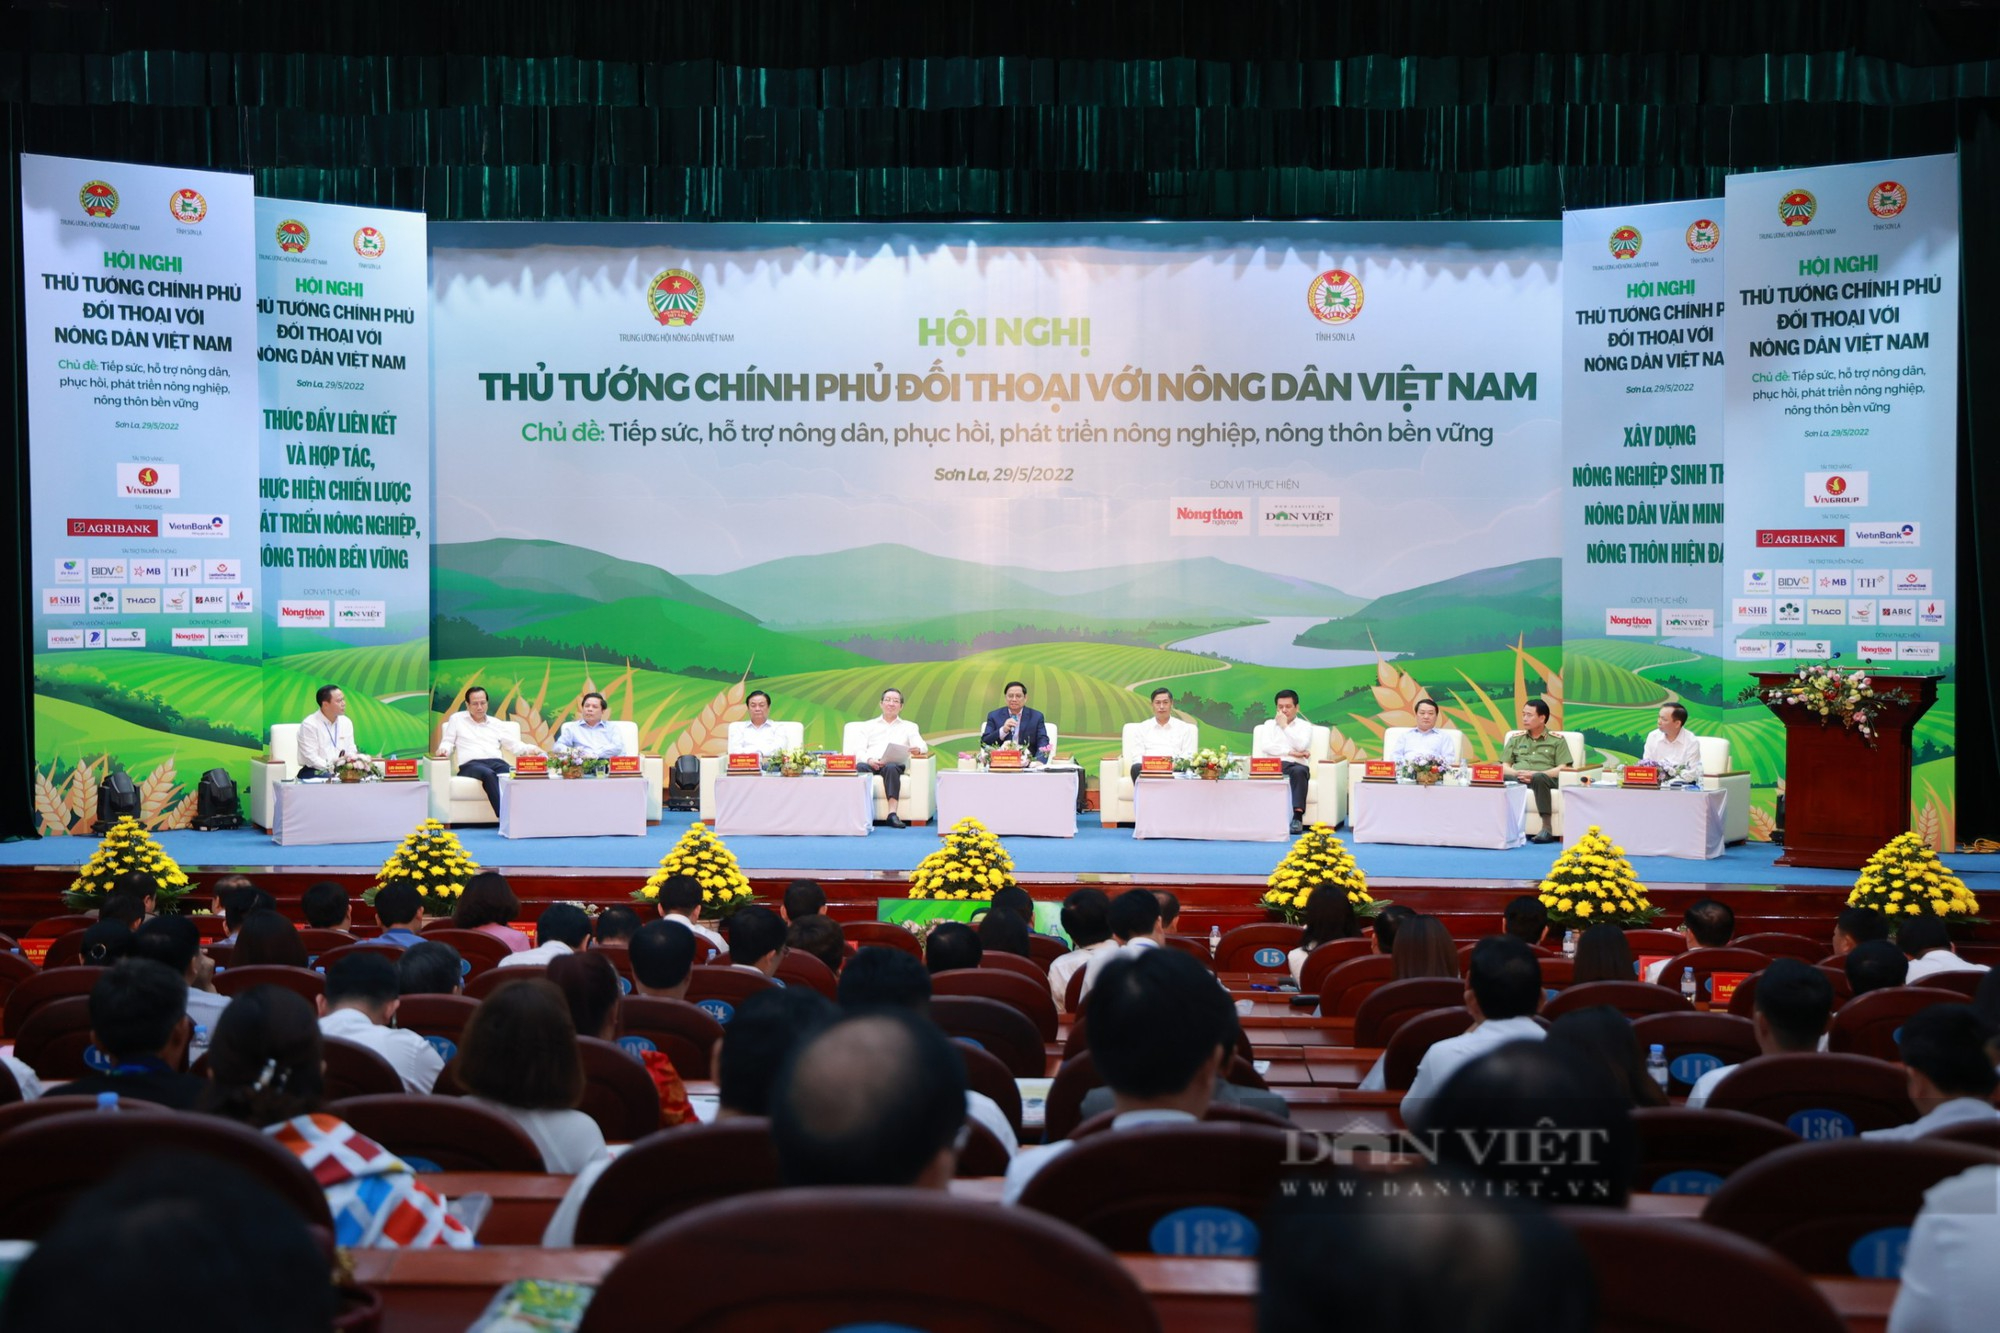 Tham dự sự kiện “Thủ tướng đối thoại với nông dân”, HDBank tiên phong tài trợ tín dụng Xanh và chuỗi nông nghiệp - Ảnh 1.